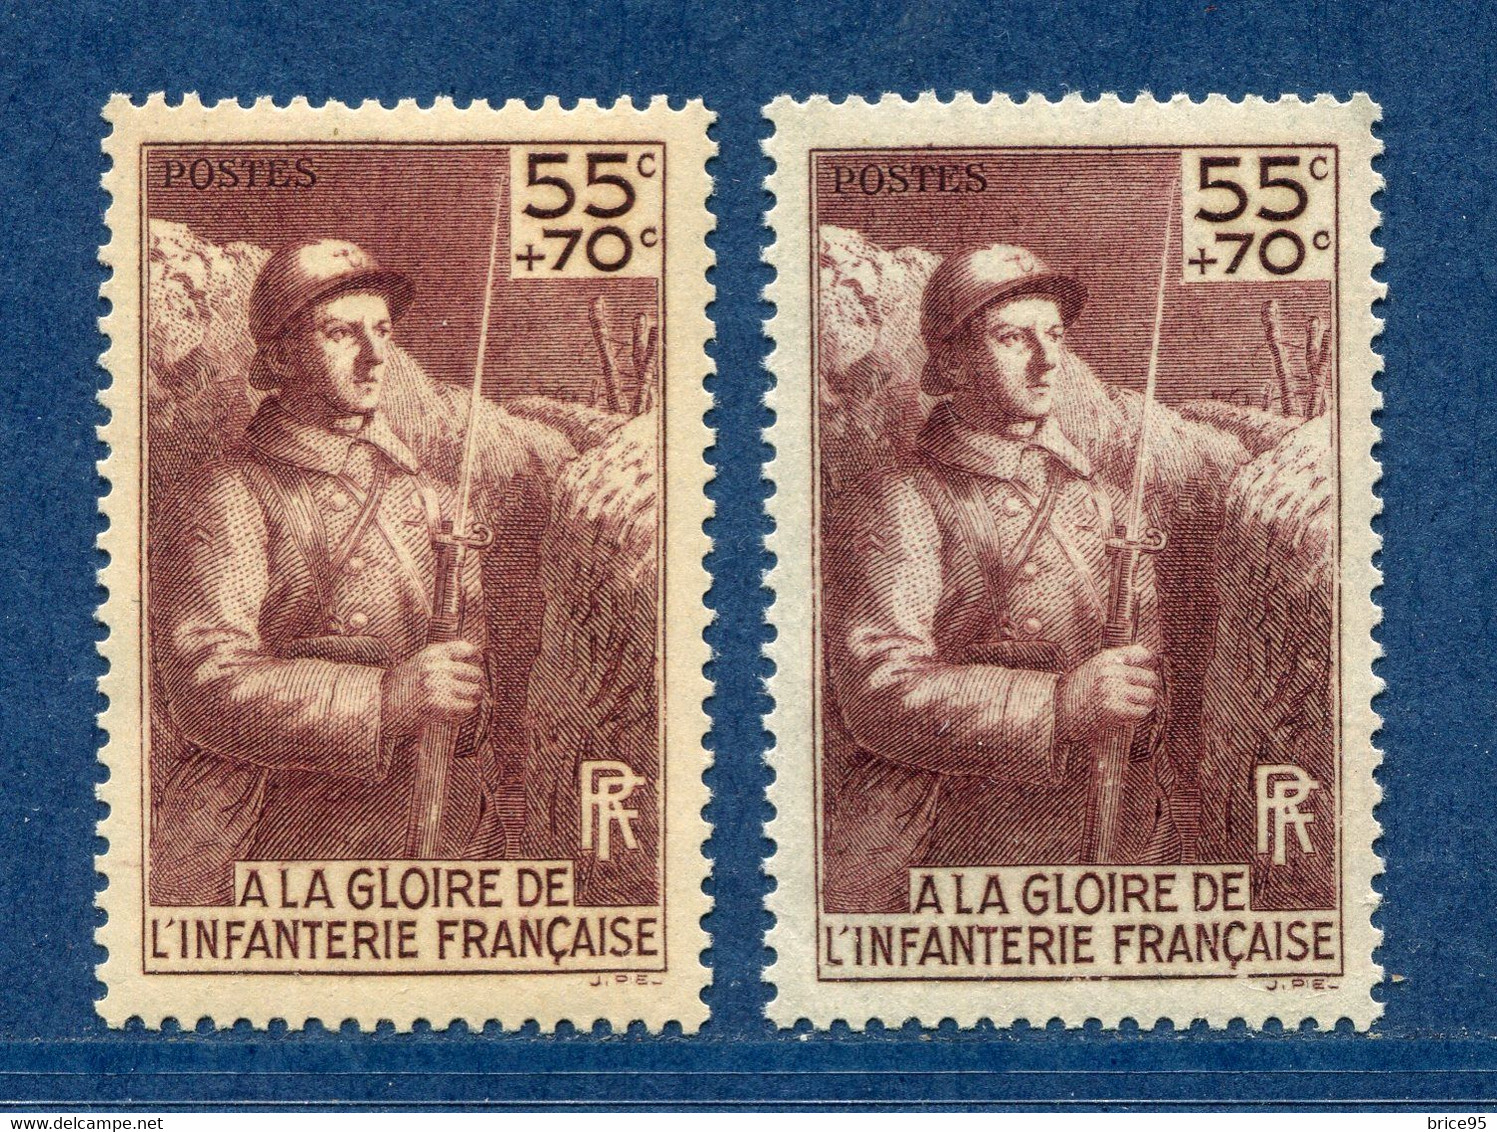 ⭐ France - Variété - YT N° 386 - Couleurs - Pétouille - Neuf Sans Charnière - 1938 ⭐ - Unused Stamps